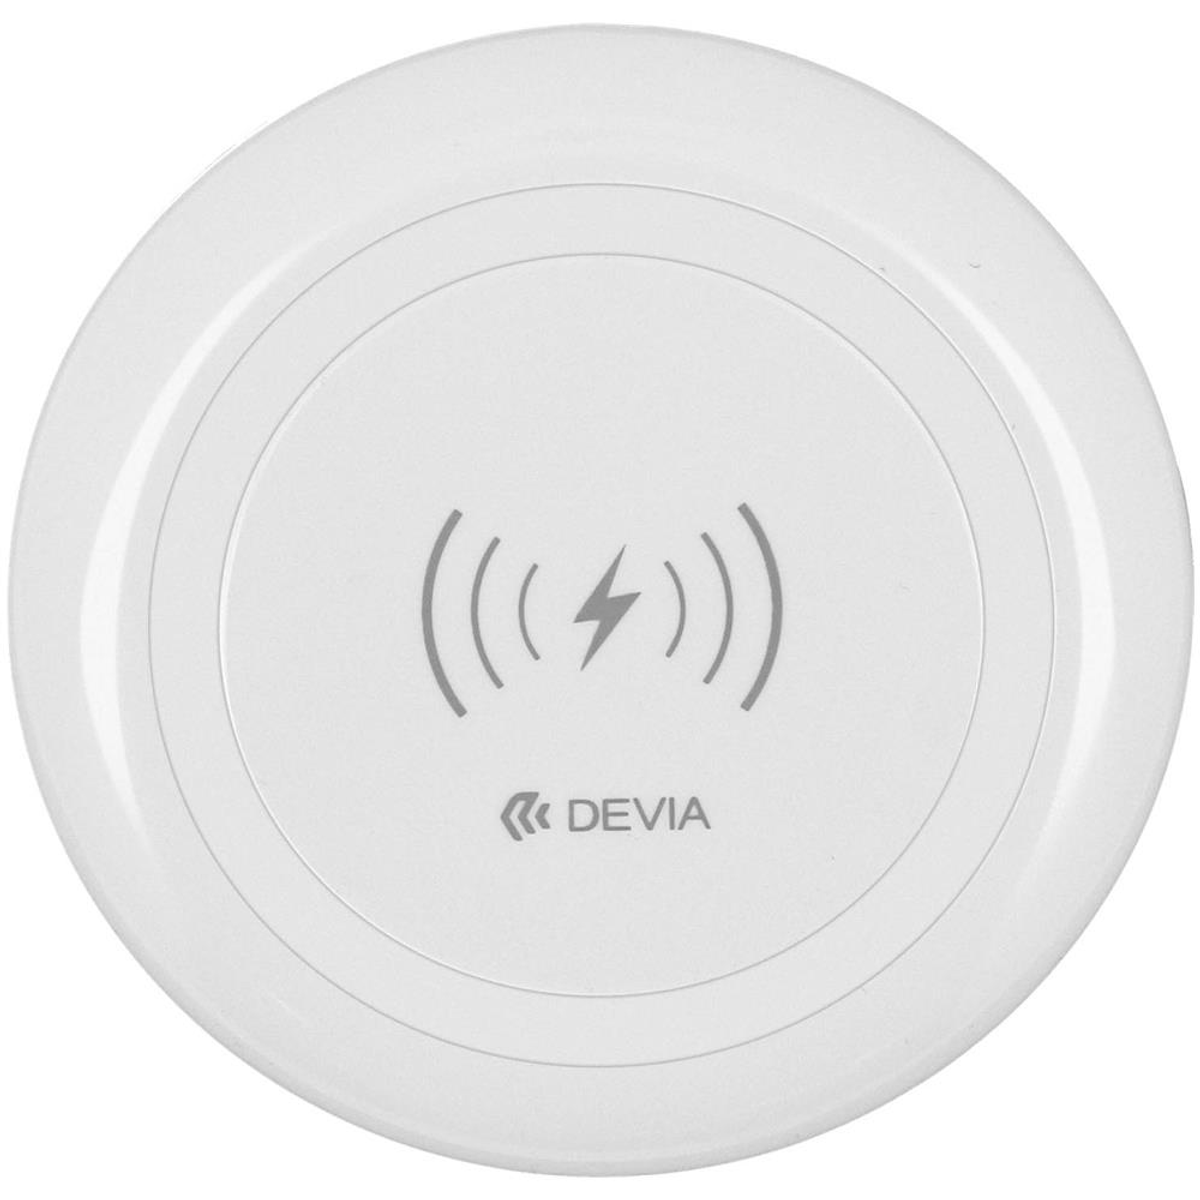 DEVIA 204839574 Netzteile Weiß Apple|Samsung, & Ladegeräte